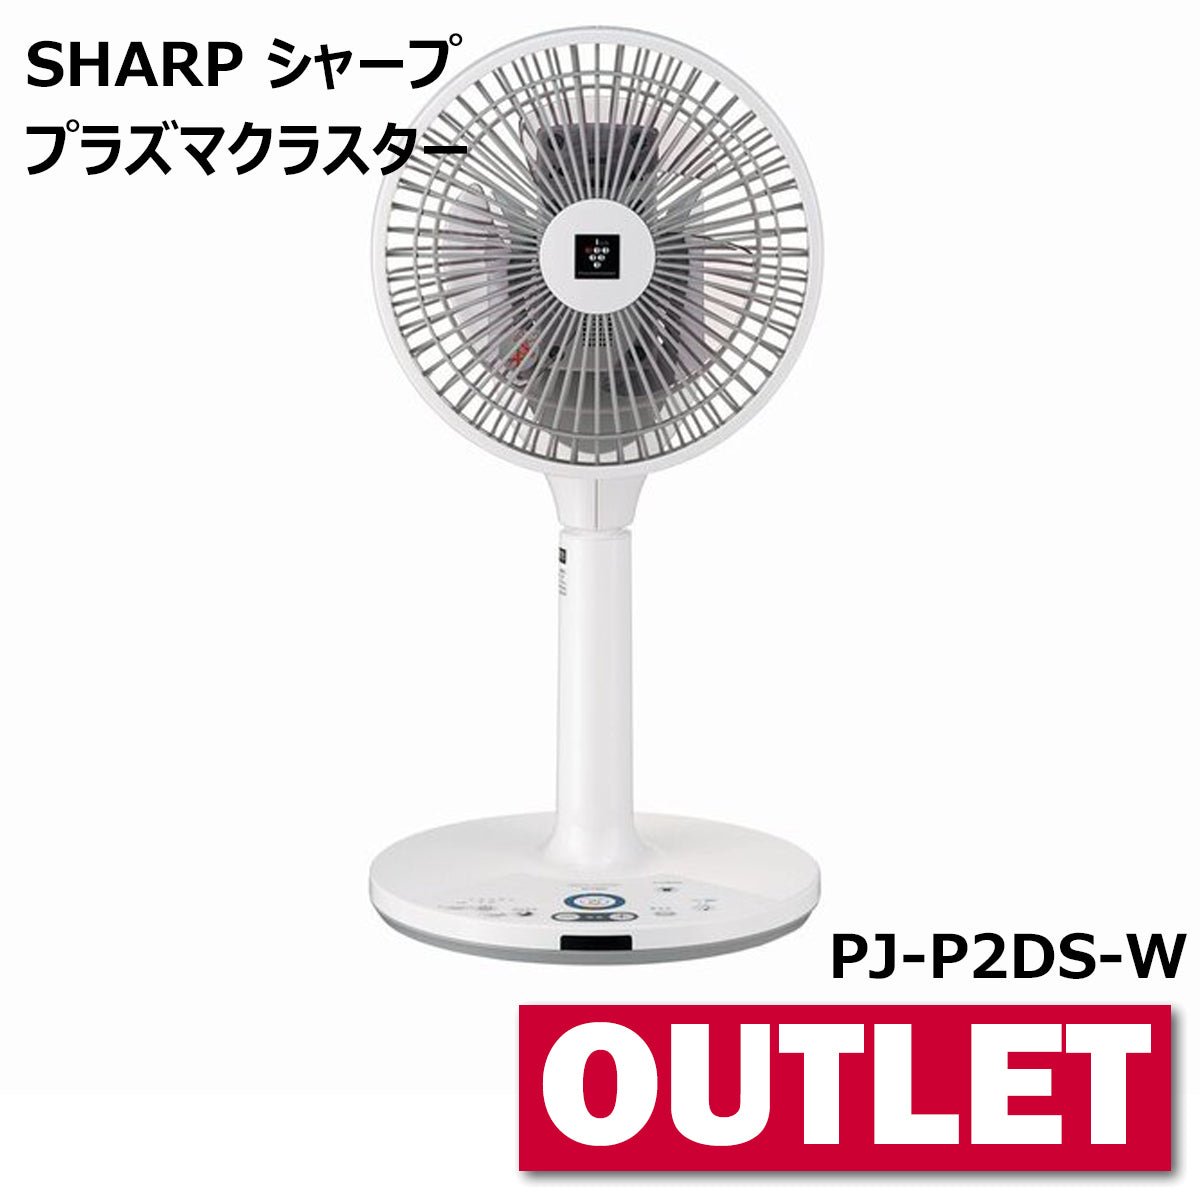 SHARP シャープ プラズマクラスター扇風機 3Dファン PJ-P2DS-W【沖縄県離島・沖縄県外への配送不可】